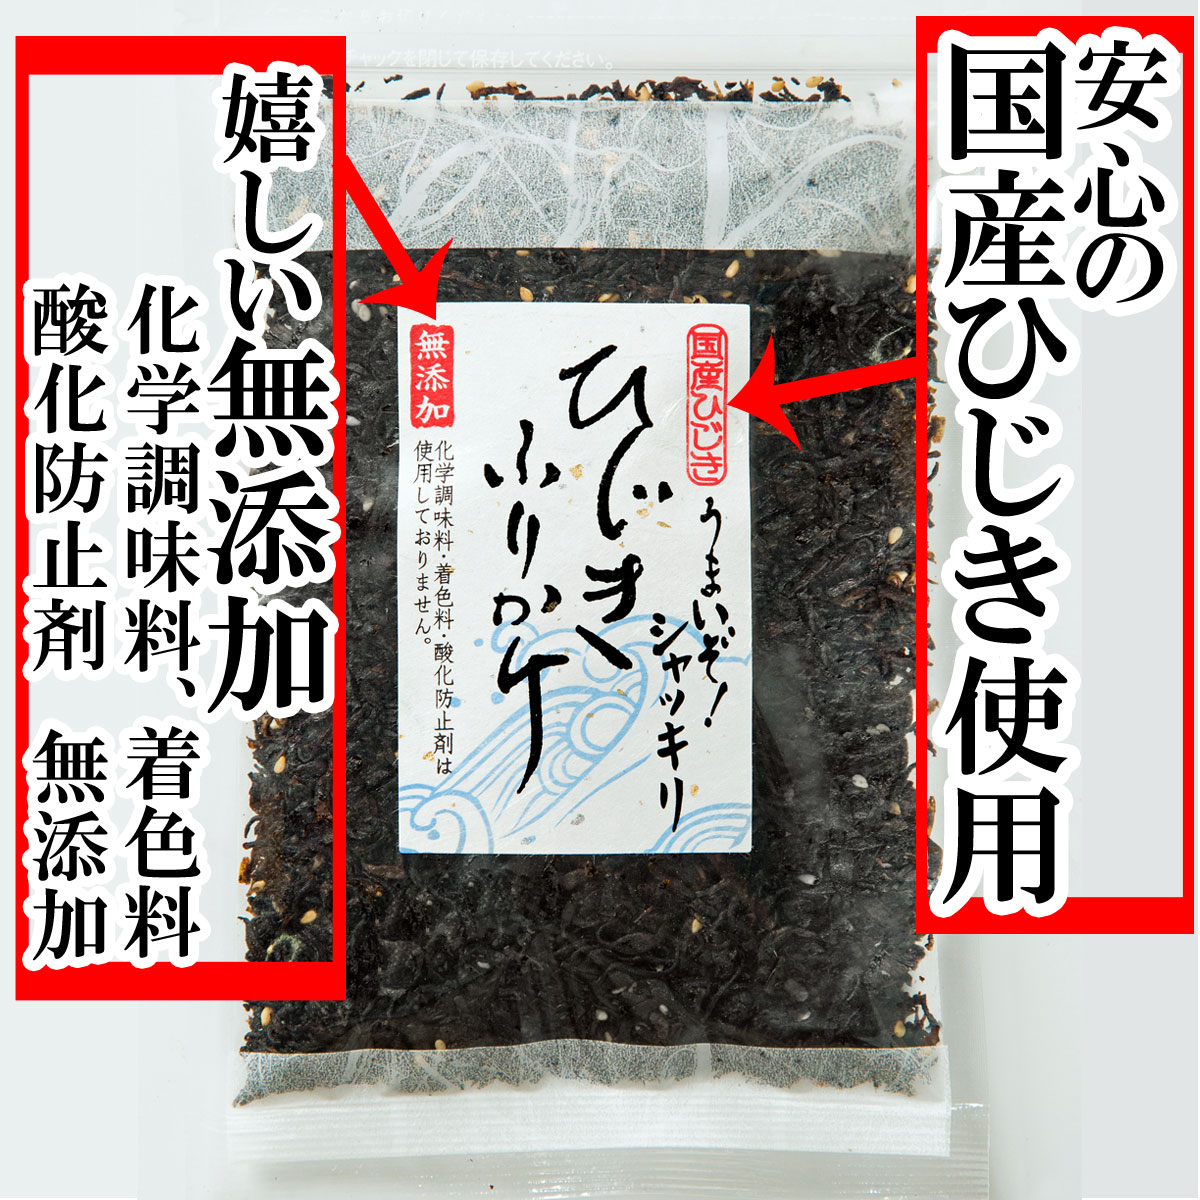 ひじきふりかけ50gは、国産ひじきを化学調味料等無添加で仕上げた、ソフトふりかけ。...:ajizukuri:10000081